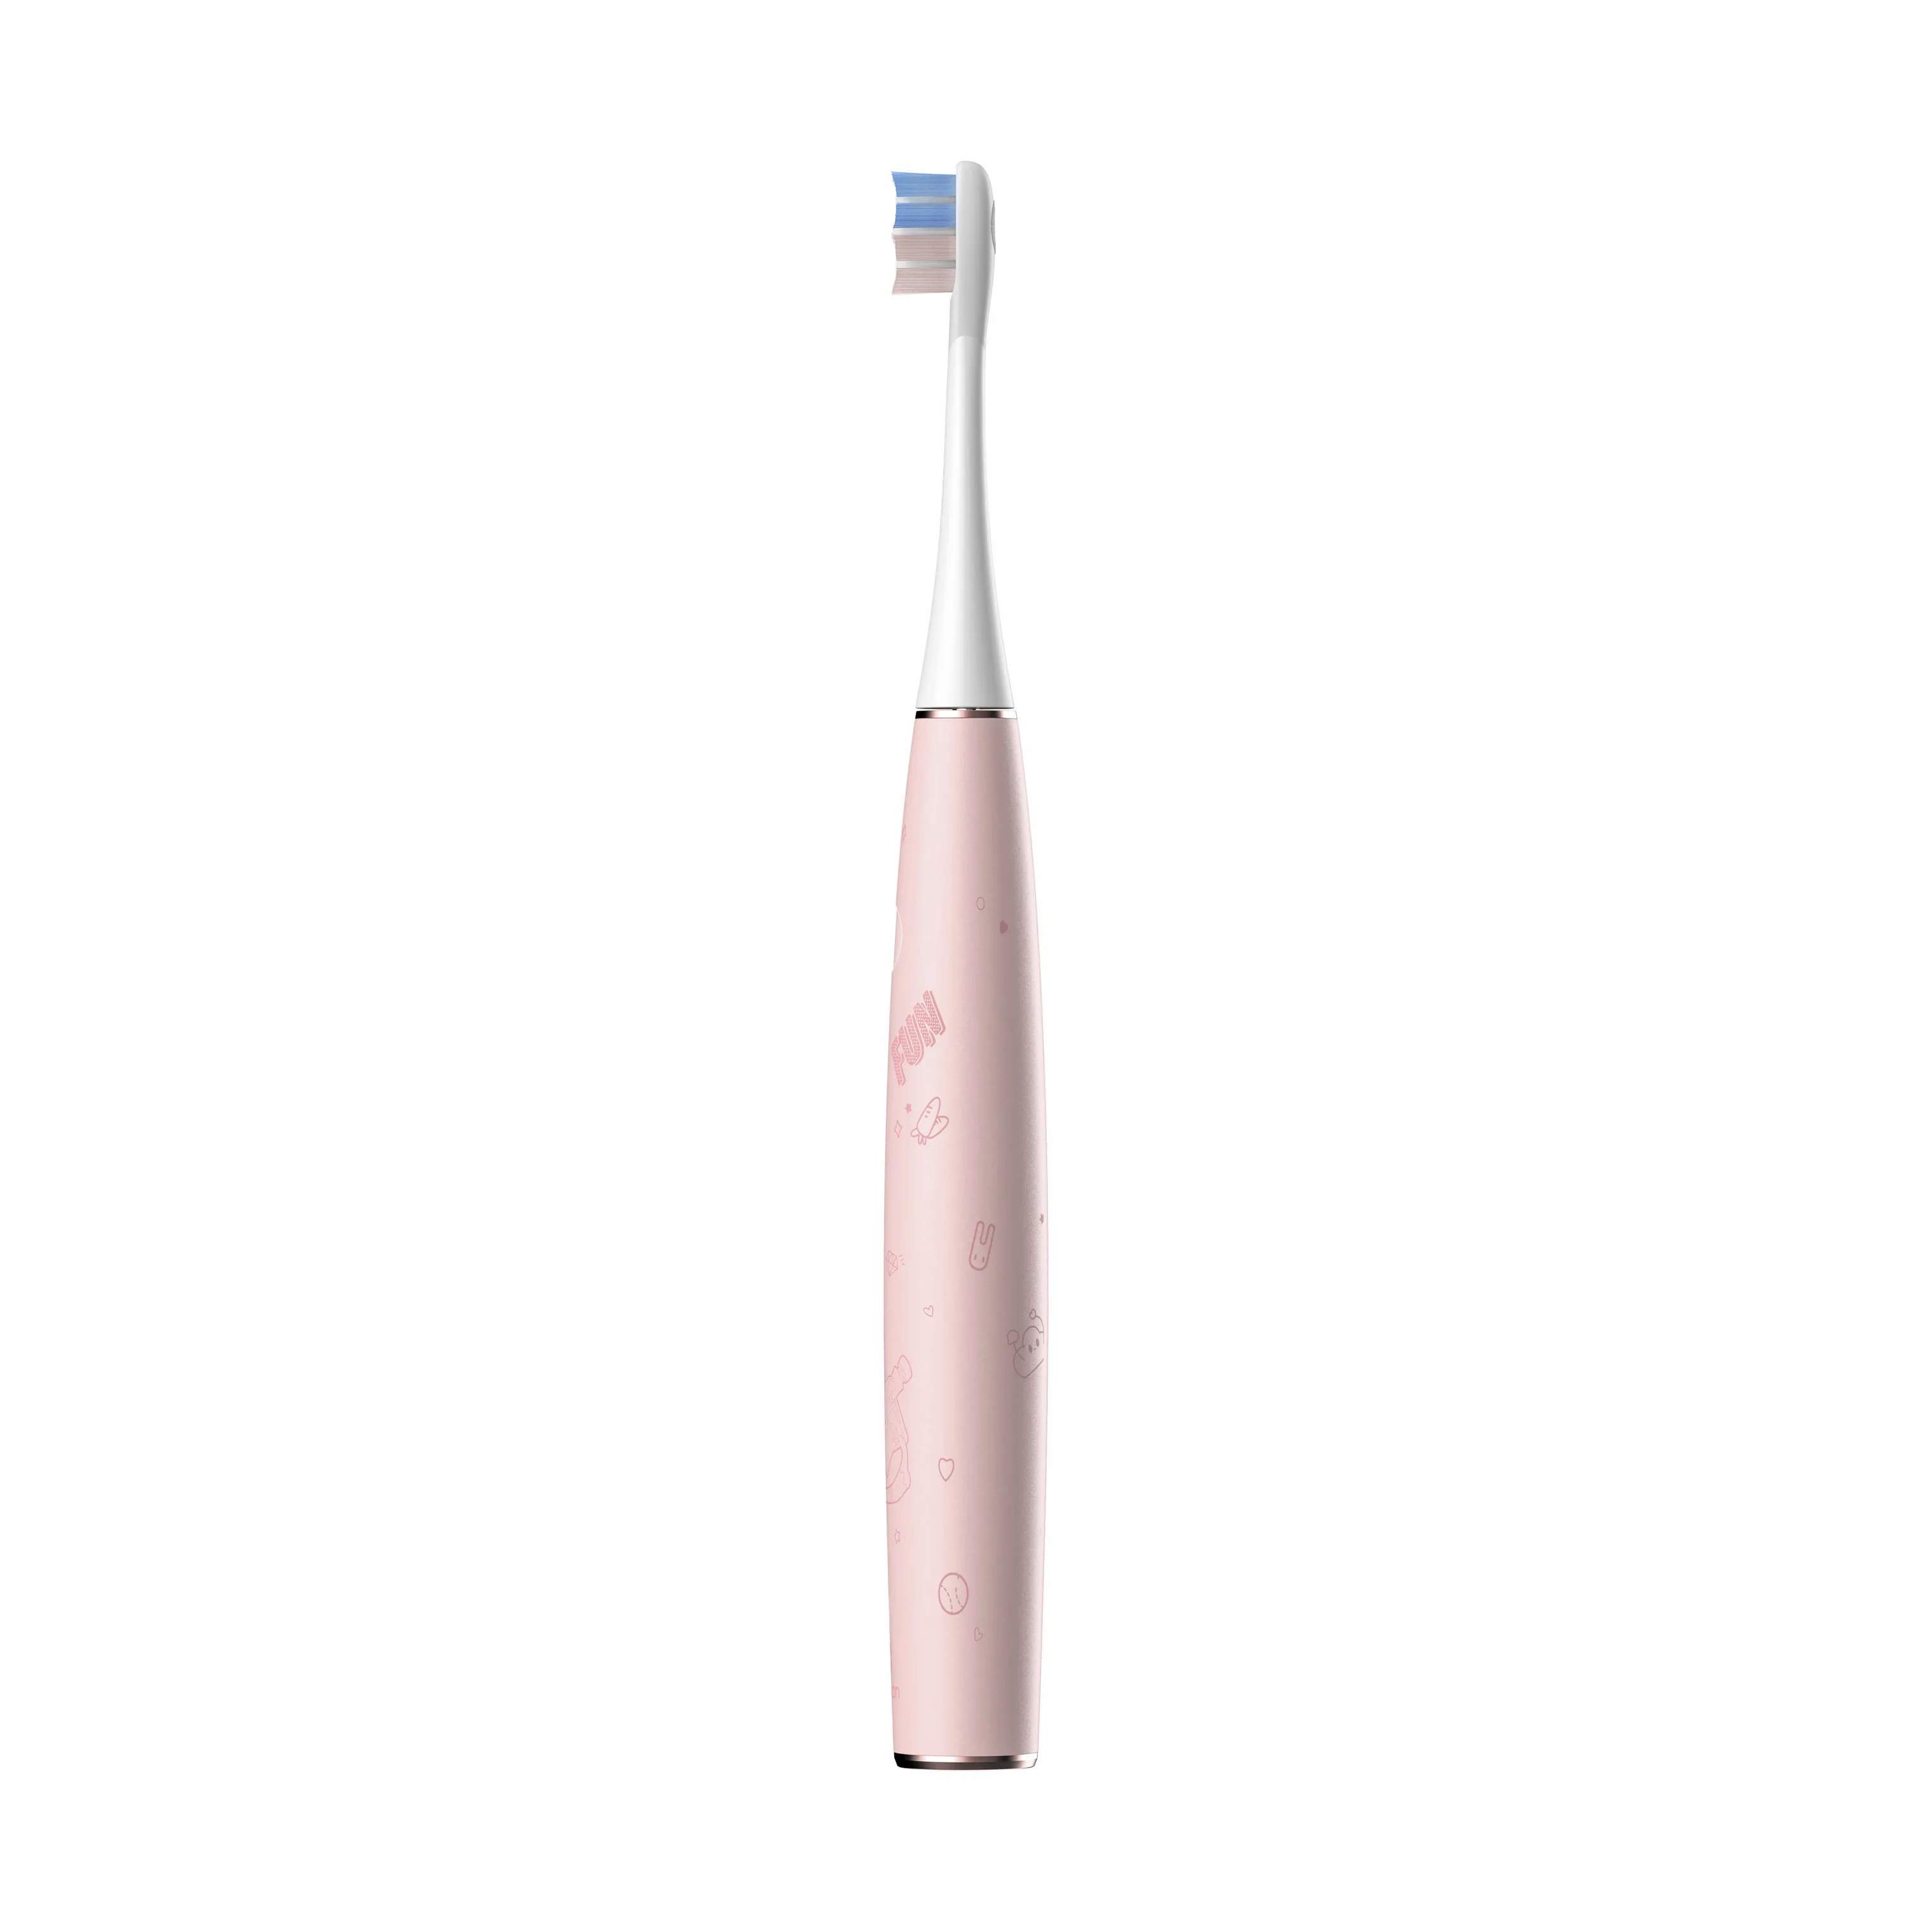 Børne Elektrisk Tandbørste, pink, large